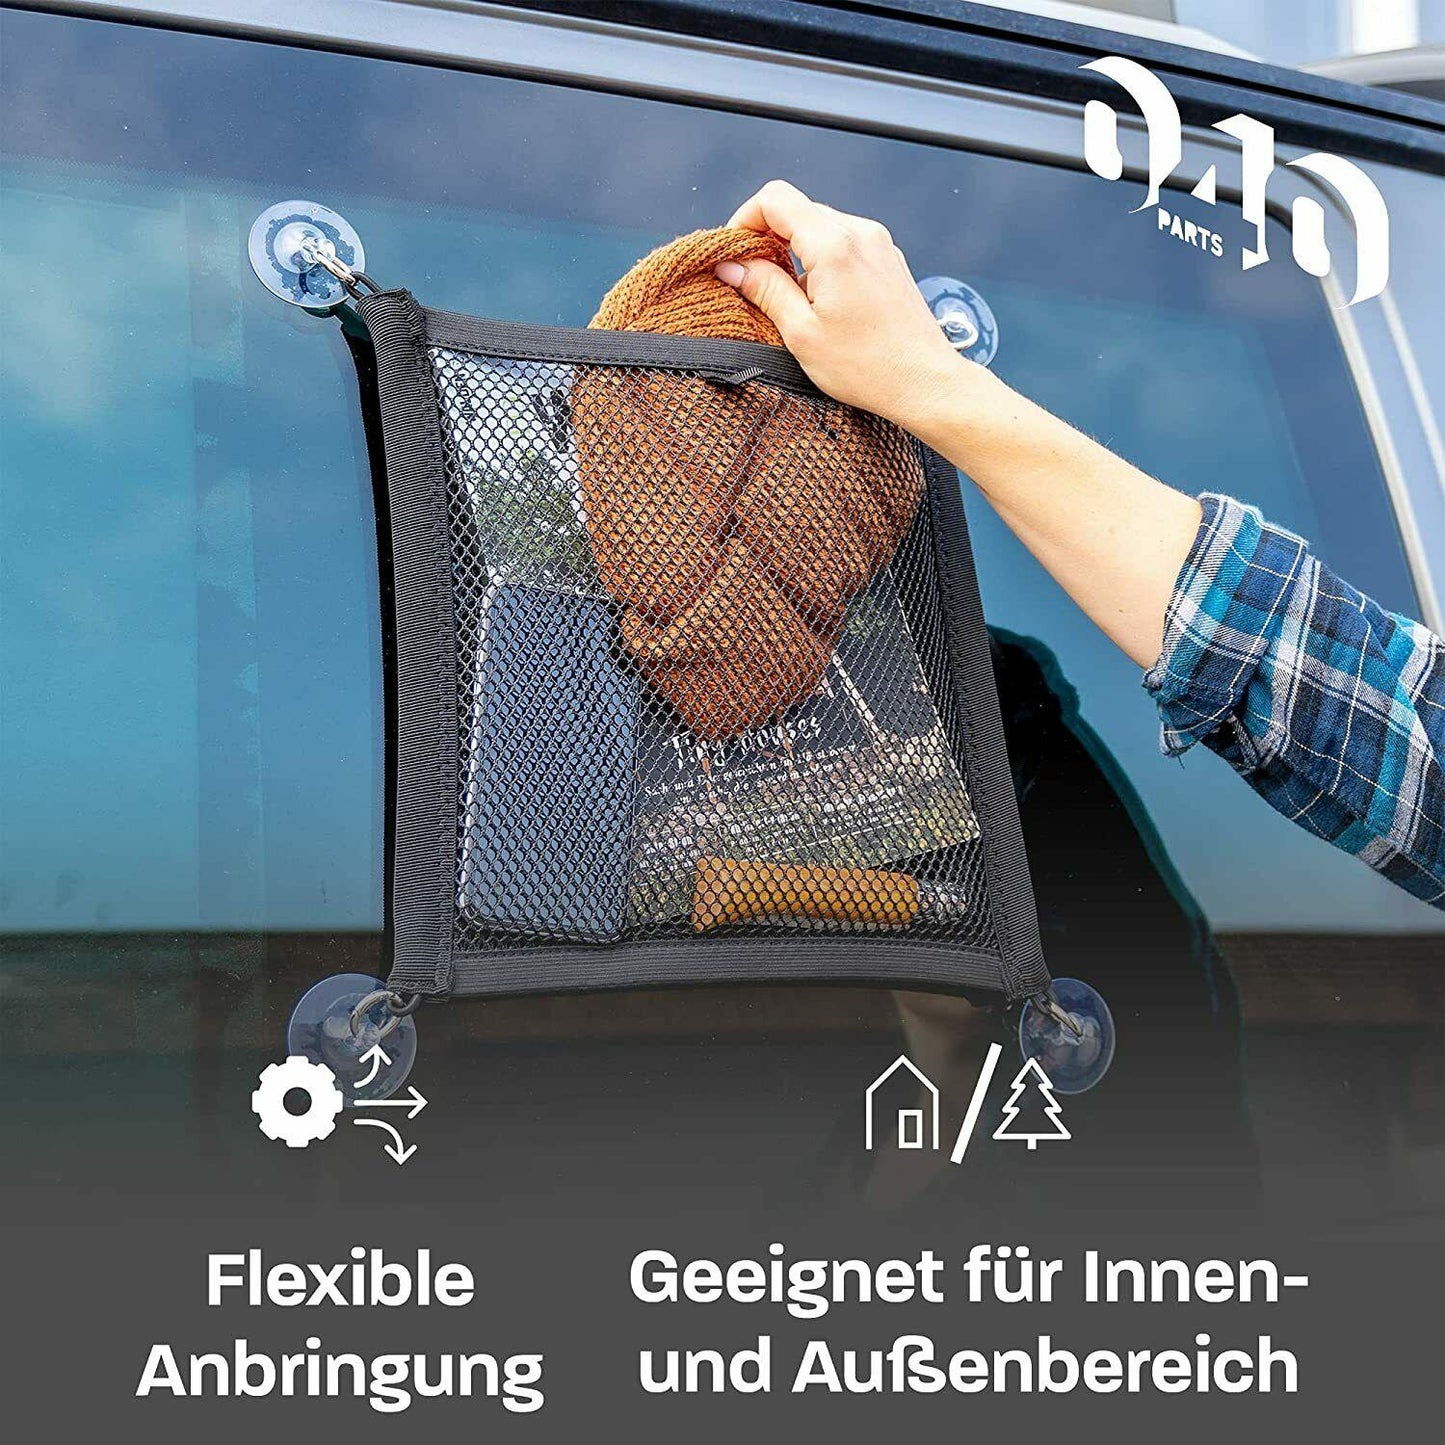 040 Parts Aufbewahrungs Netz für das Küchenfenster von VW T5 T6 Bulli, Multivan - Mixcover - 040 parts